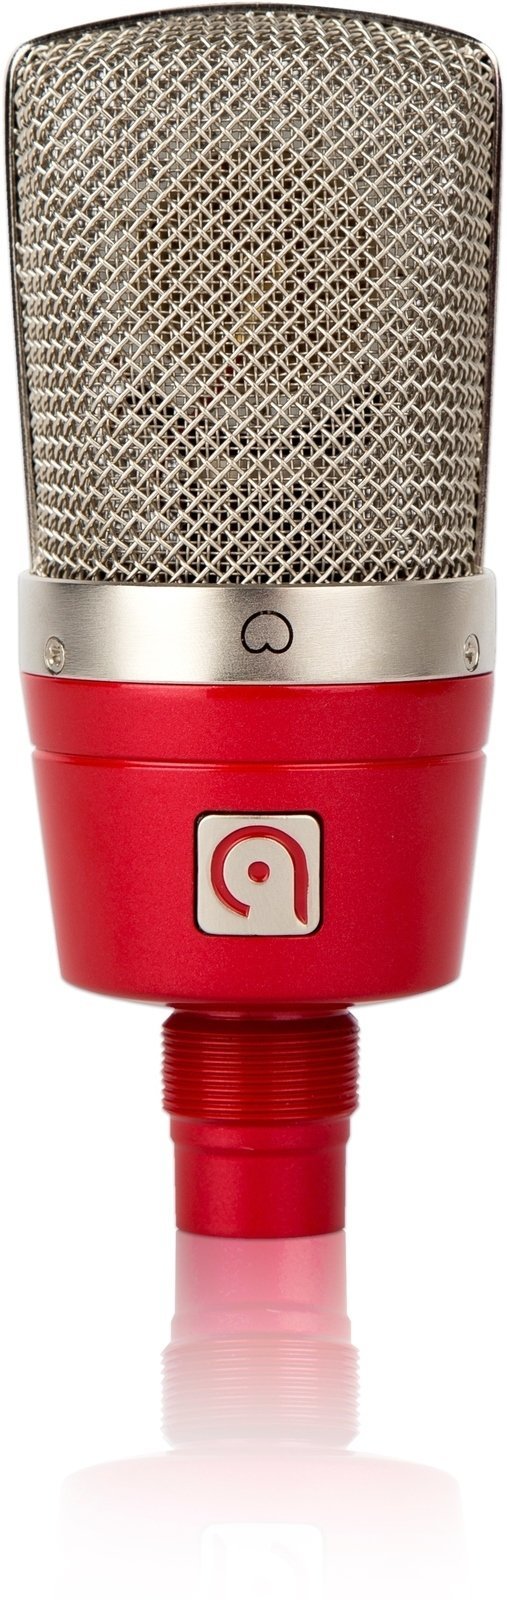 Microfone condensador de estúdio Audio Probe LISA 1 Red